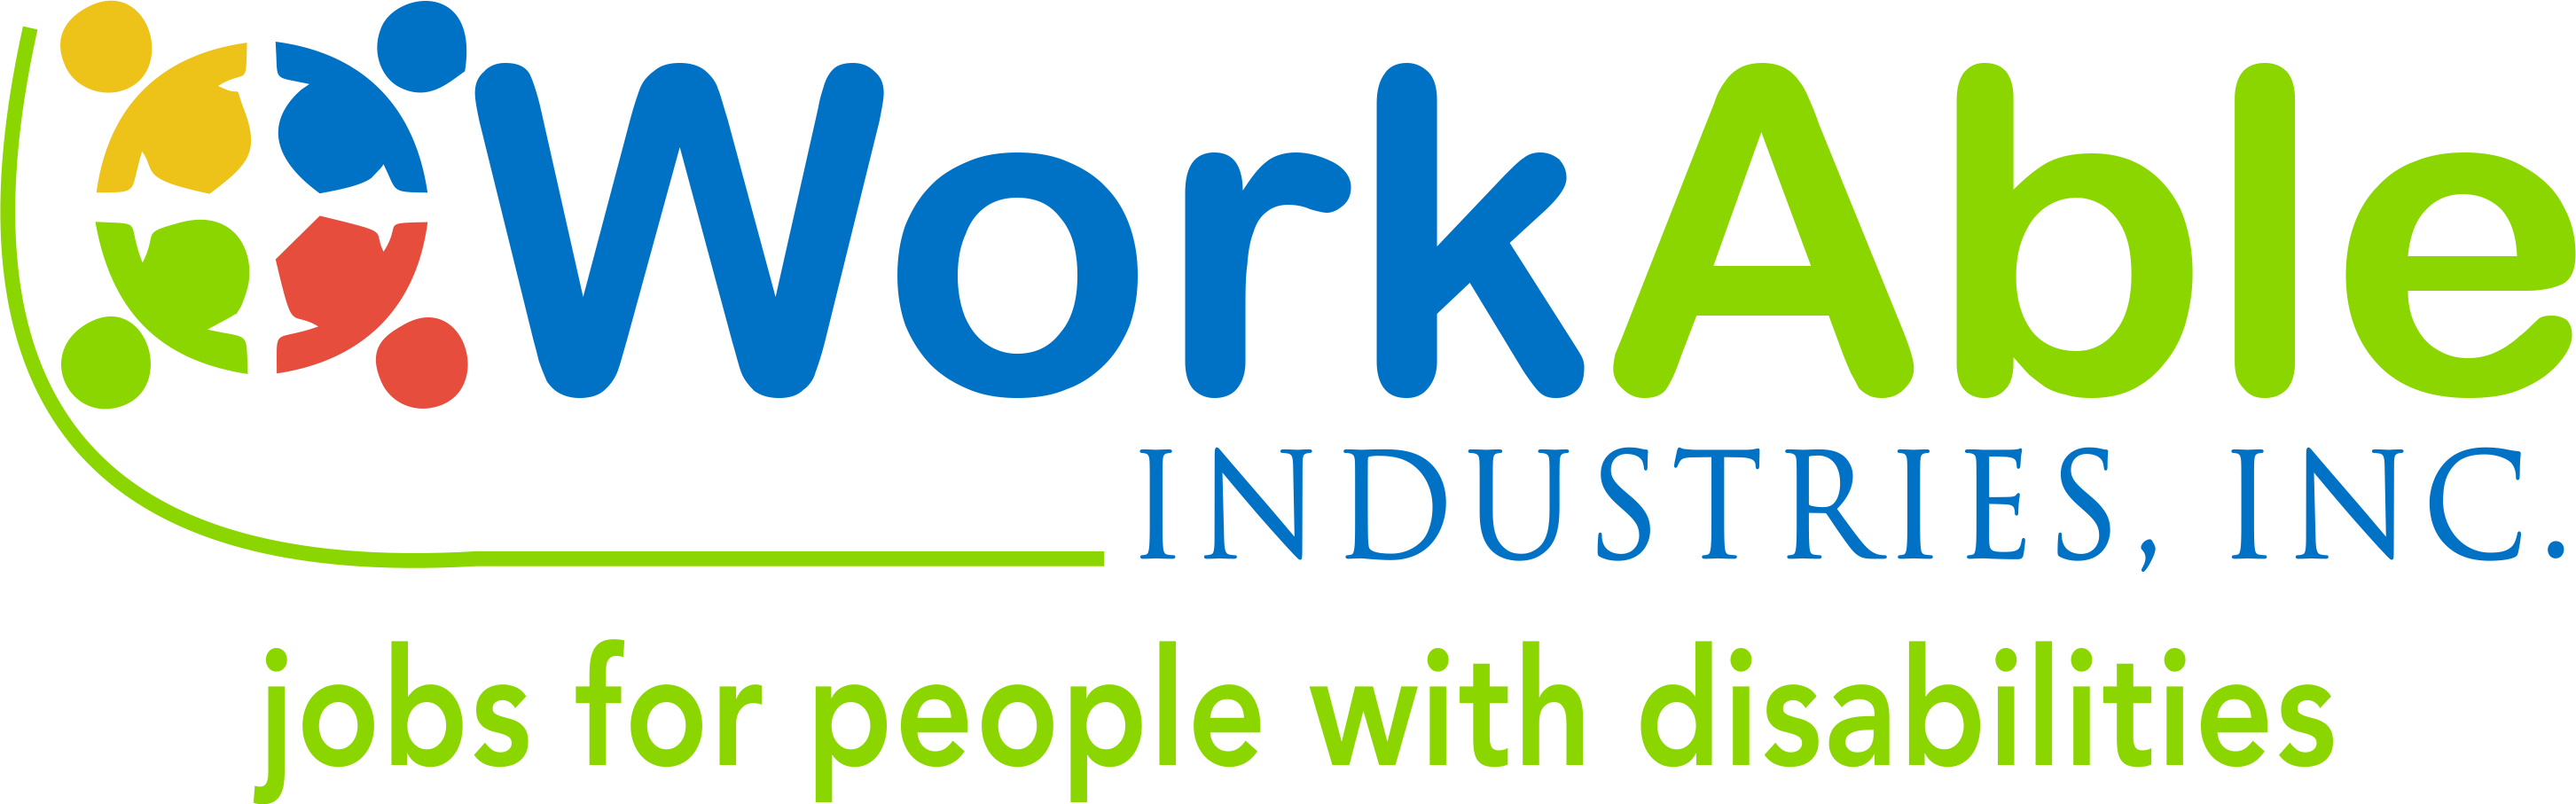 WorkAble Industries